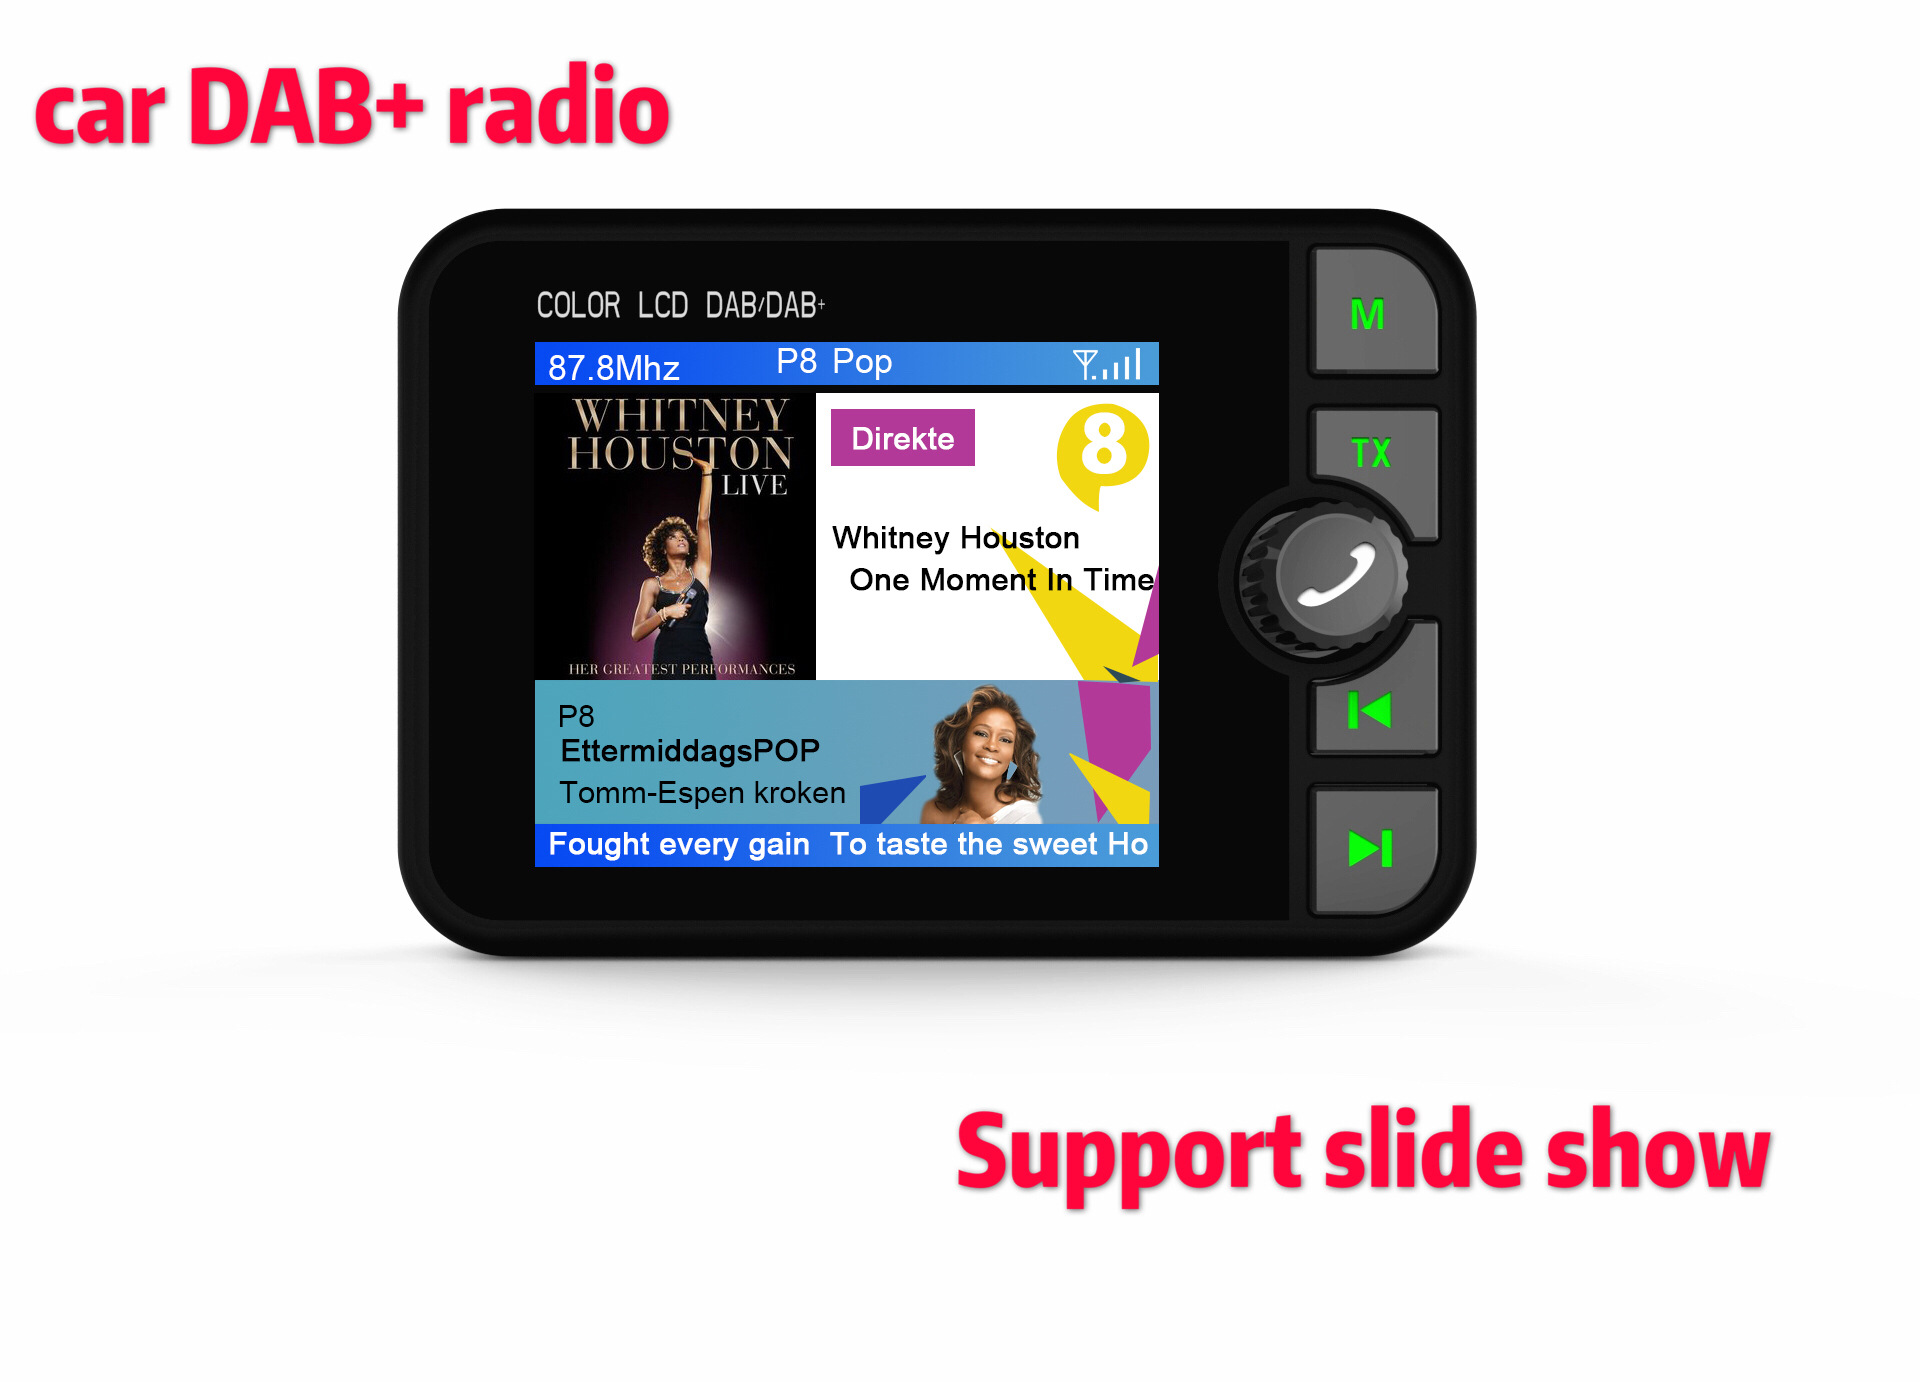 欧洲站爆款彩屏车载DAB数字接收器dab radio车载蓝牙MP3多功能适